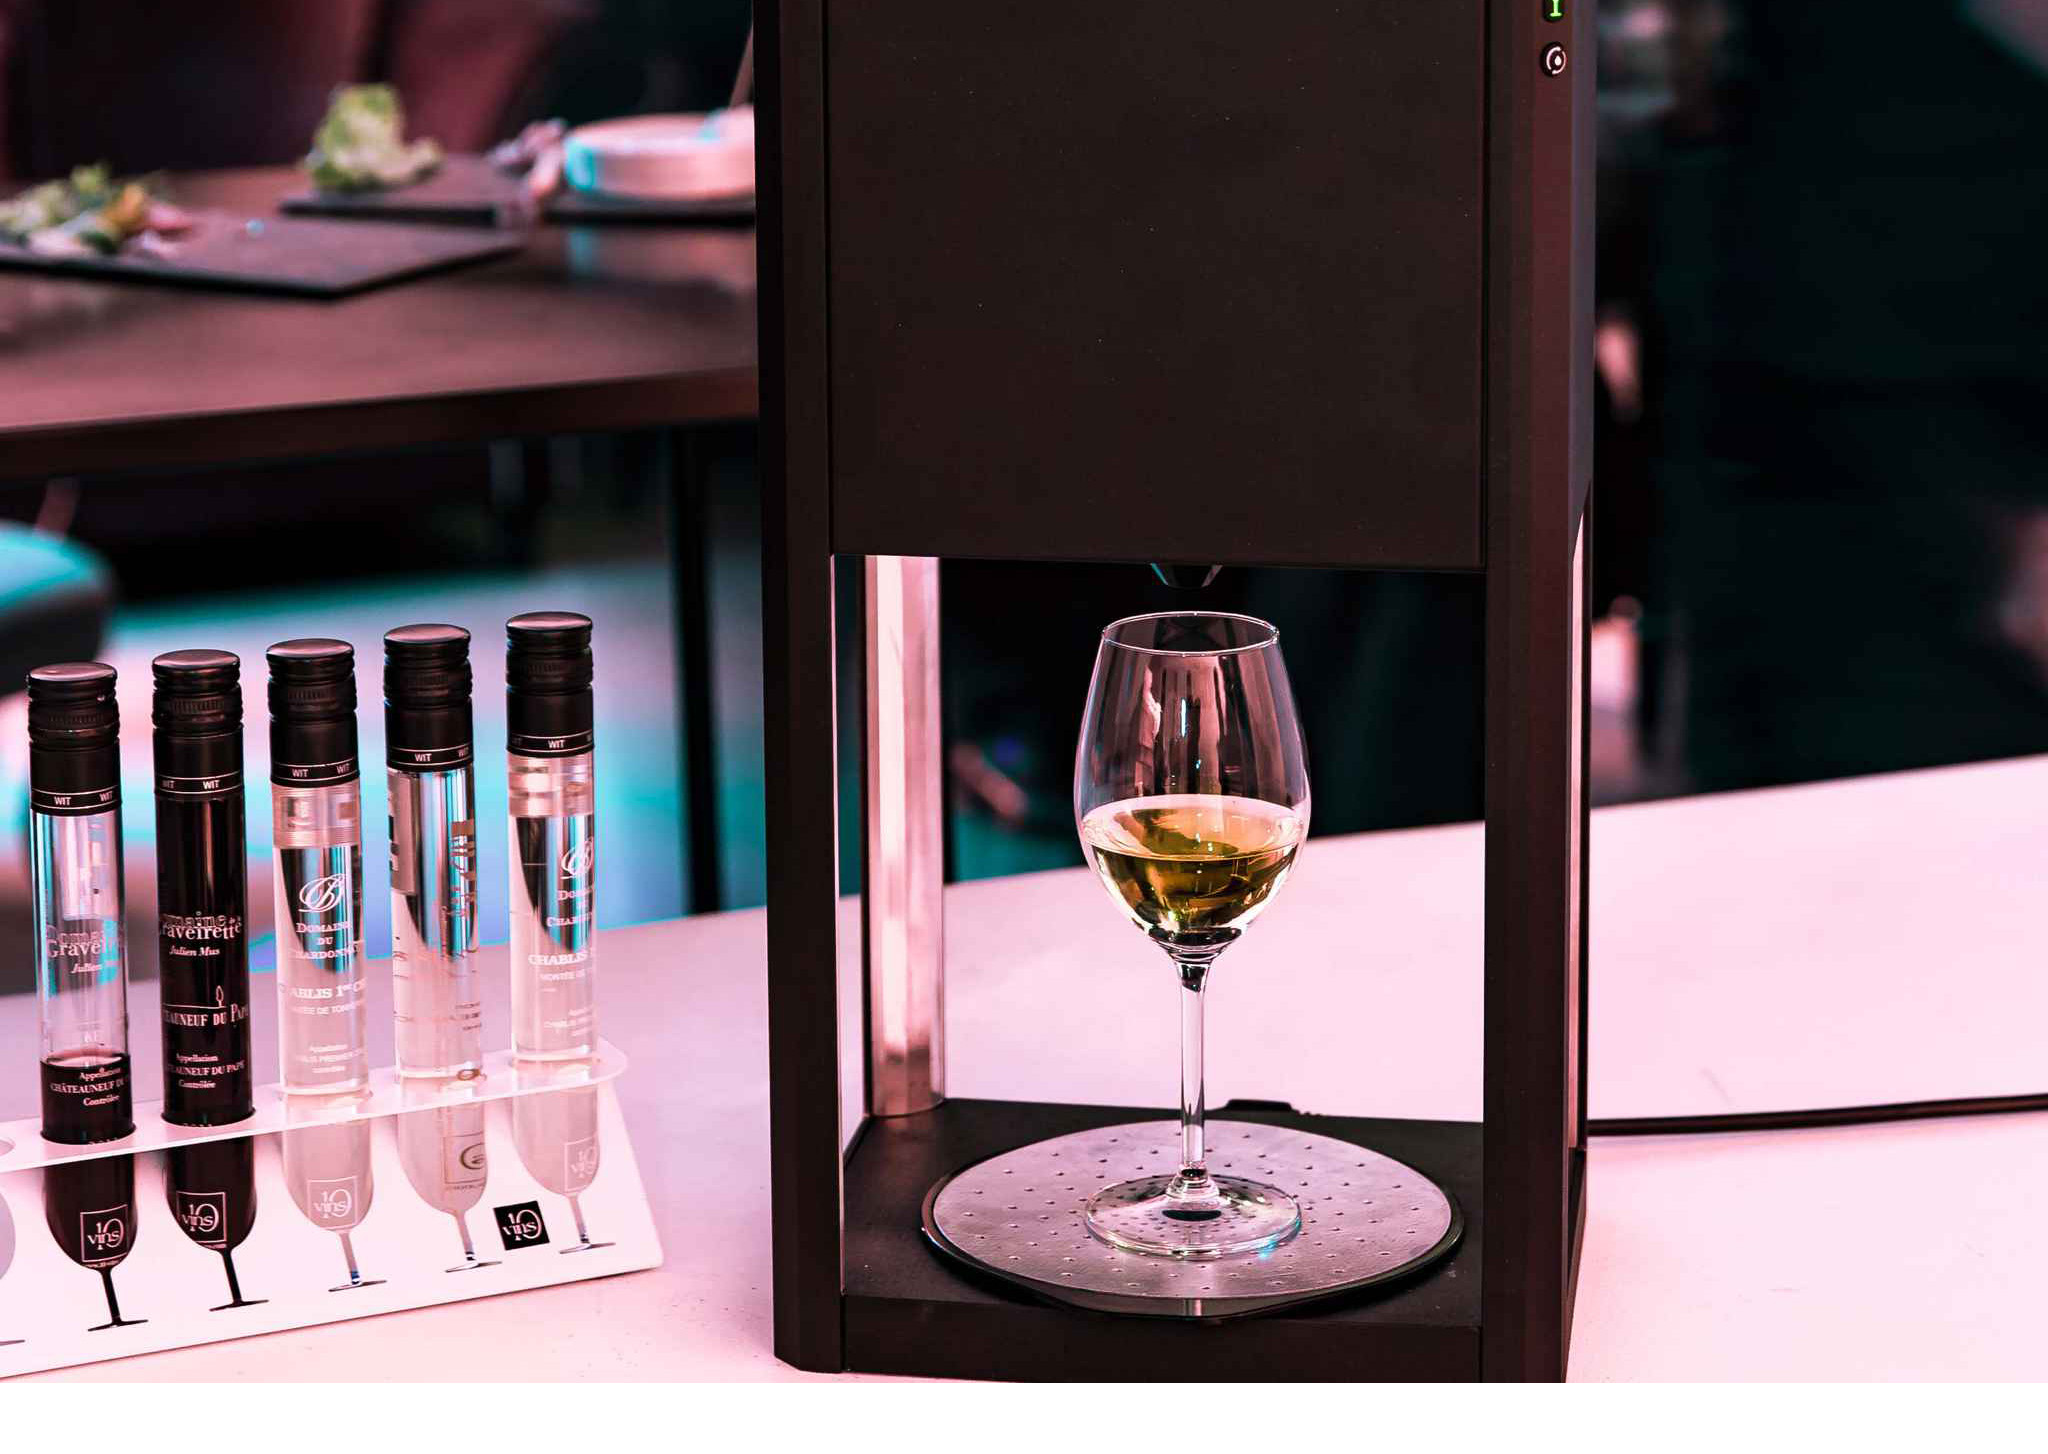 Este dispositivo puede identificar un vino y servirlo en la temperatura adecuada para degustar una buena copa